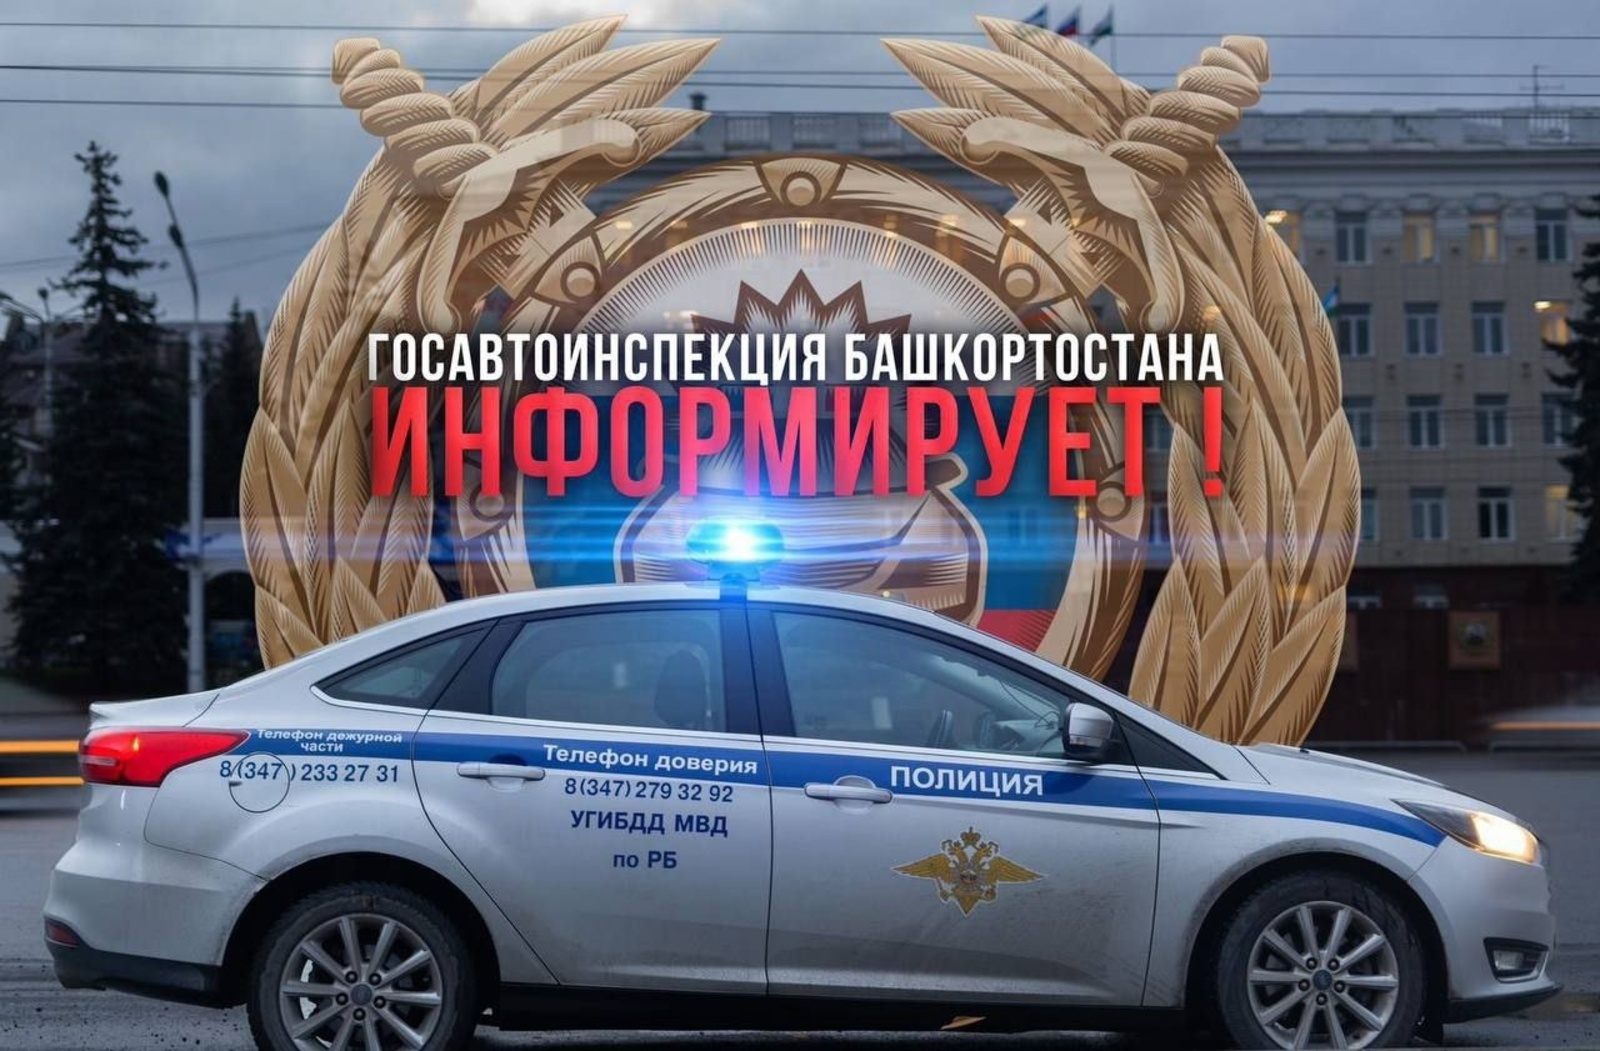 С 19 марта в Башкортостане стартовало оперативно-профилактическое мероприятие Госавтоинспекции "Государственный регистрационный знак"